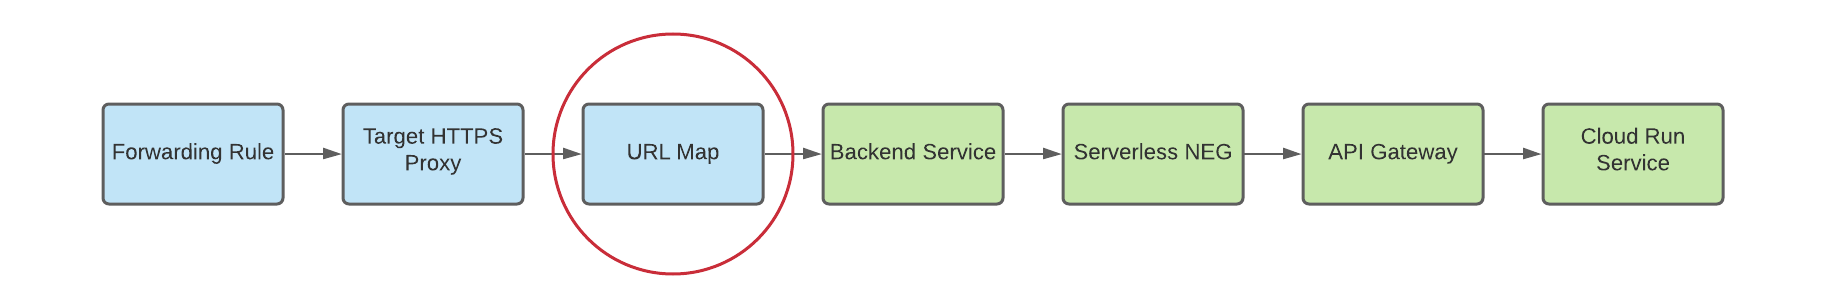 diagrama do mapa de URL para o serviço de back-end